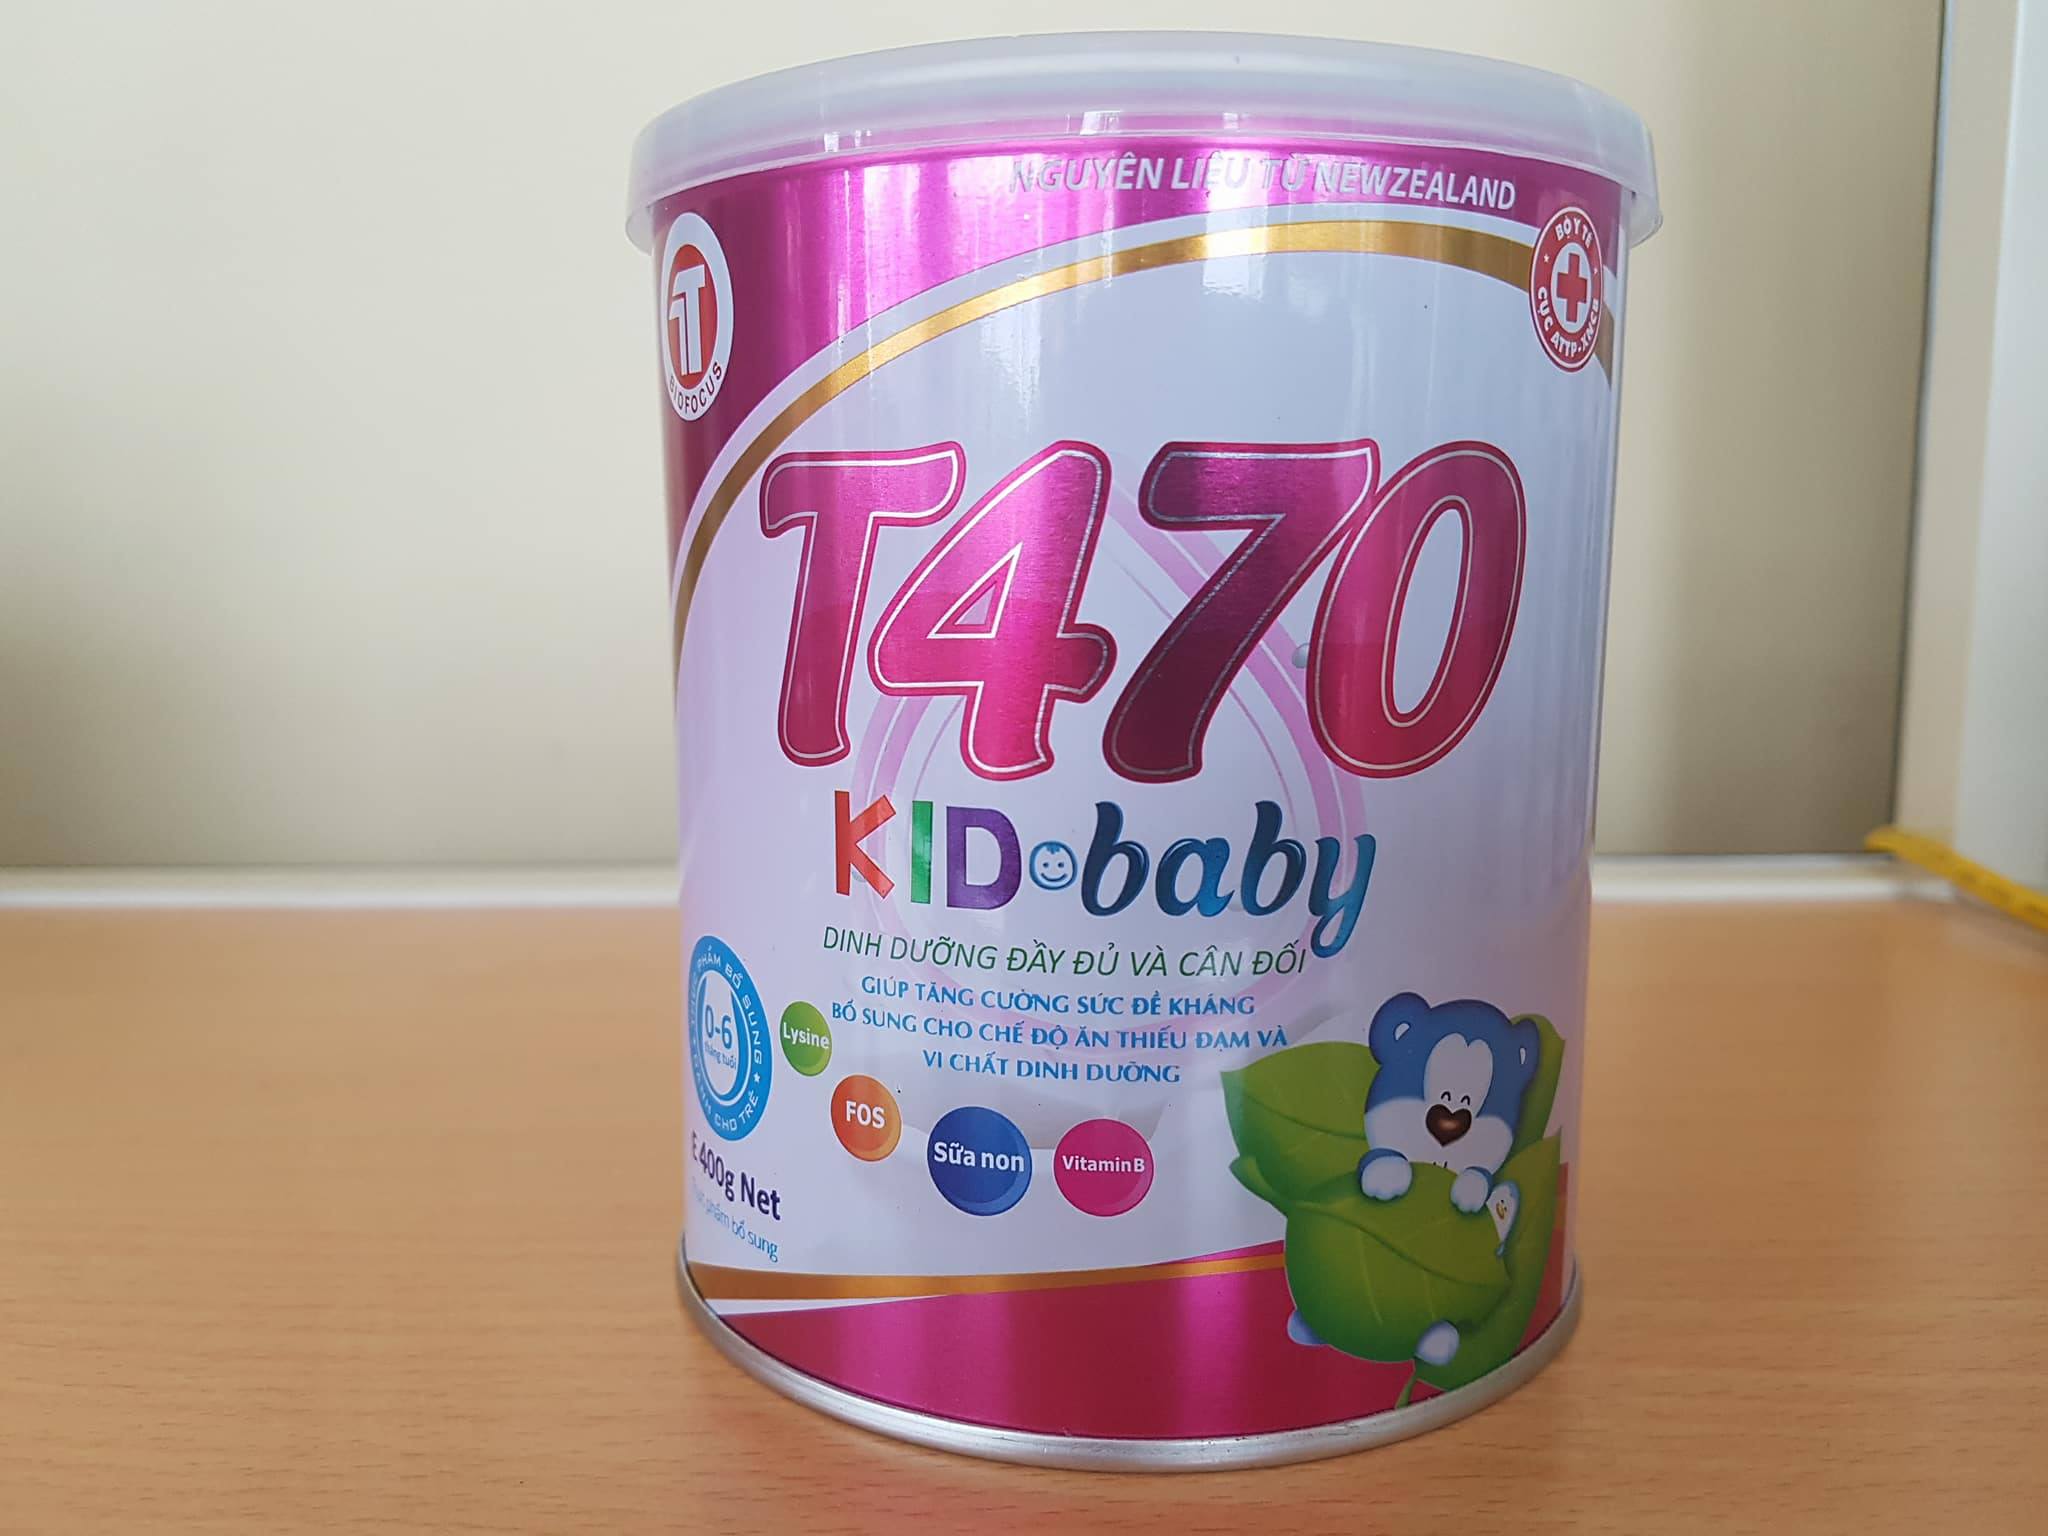 Sữa bột T470 Kid baby 400g dành cho trẻ từ 0 - 6 tháng